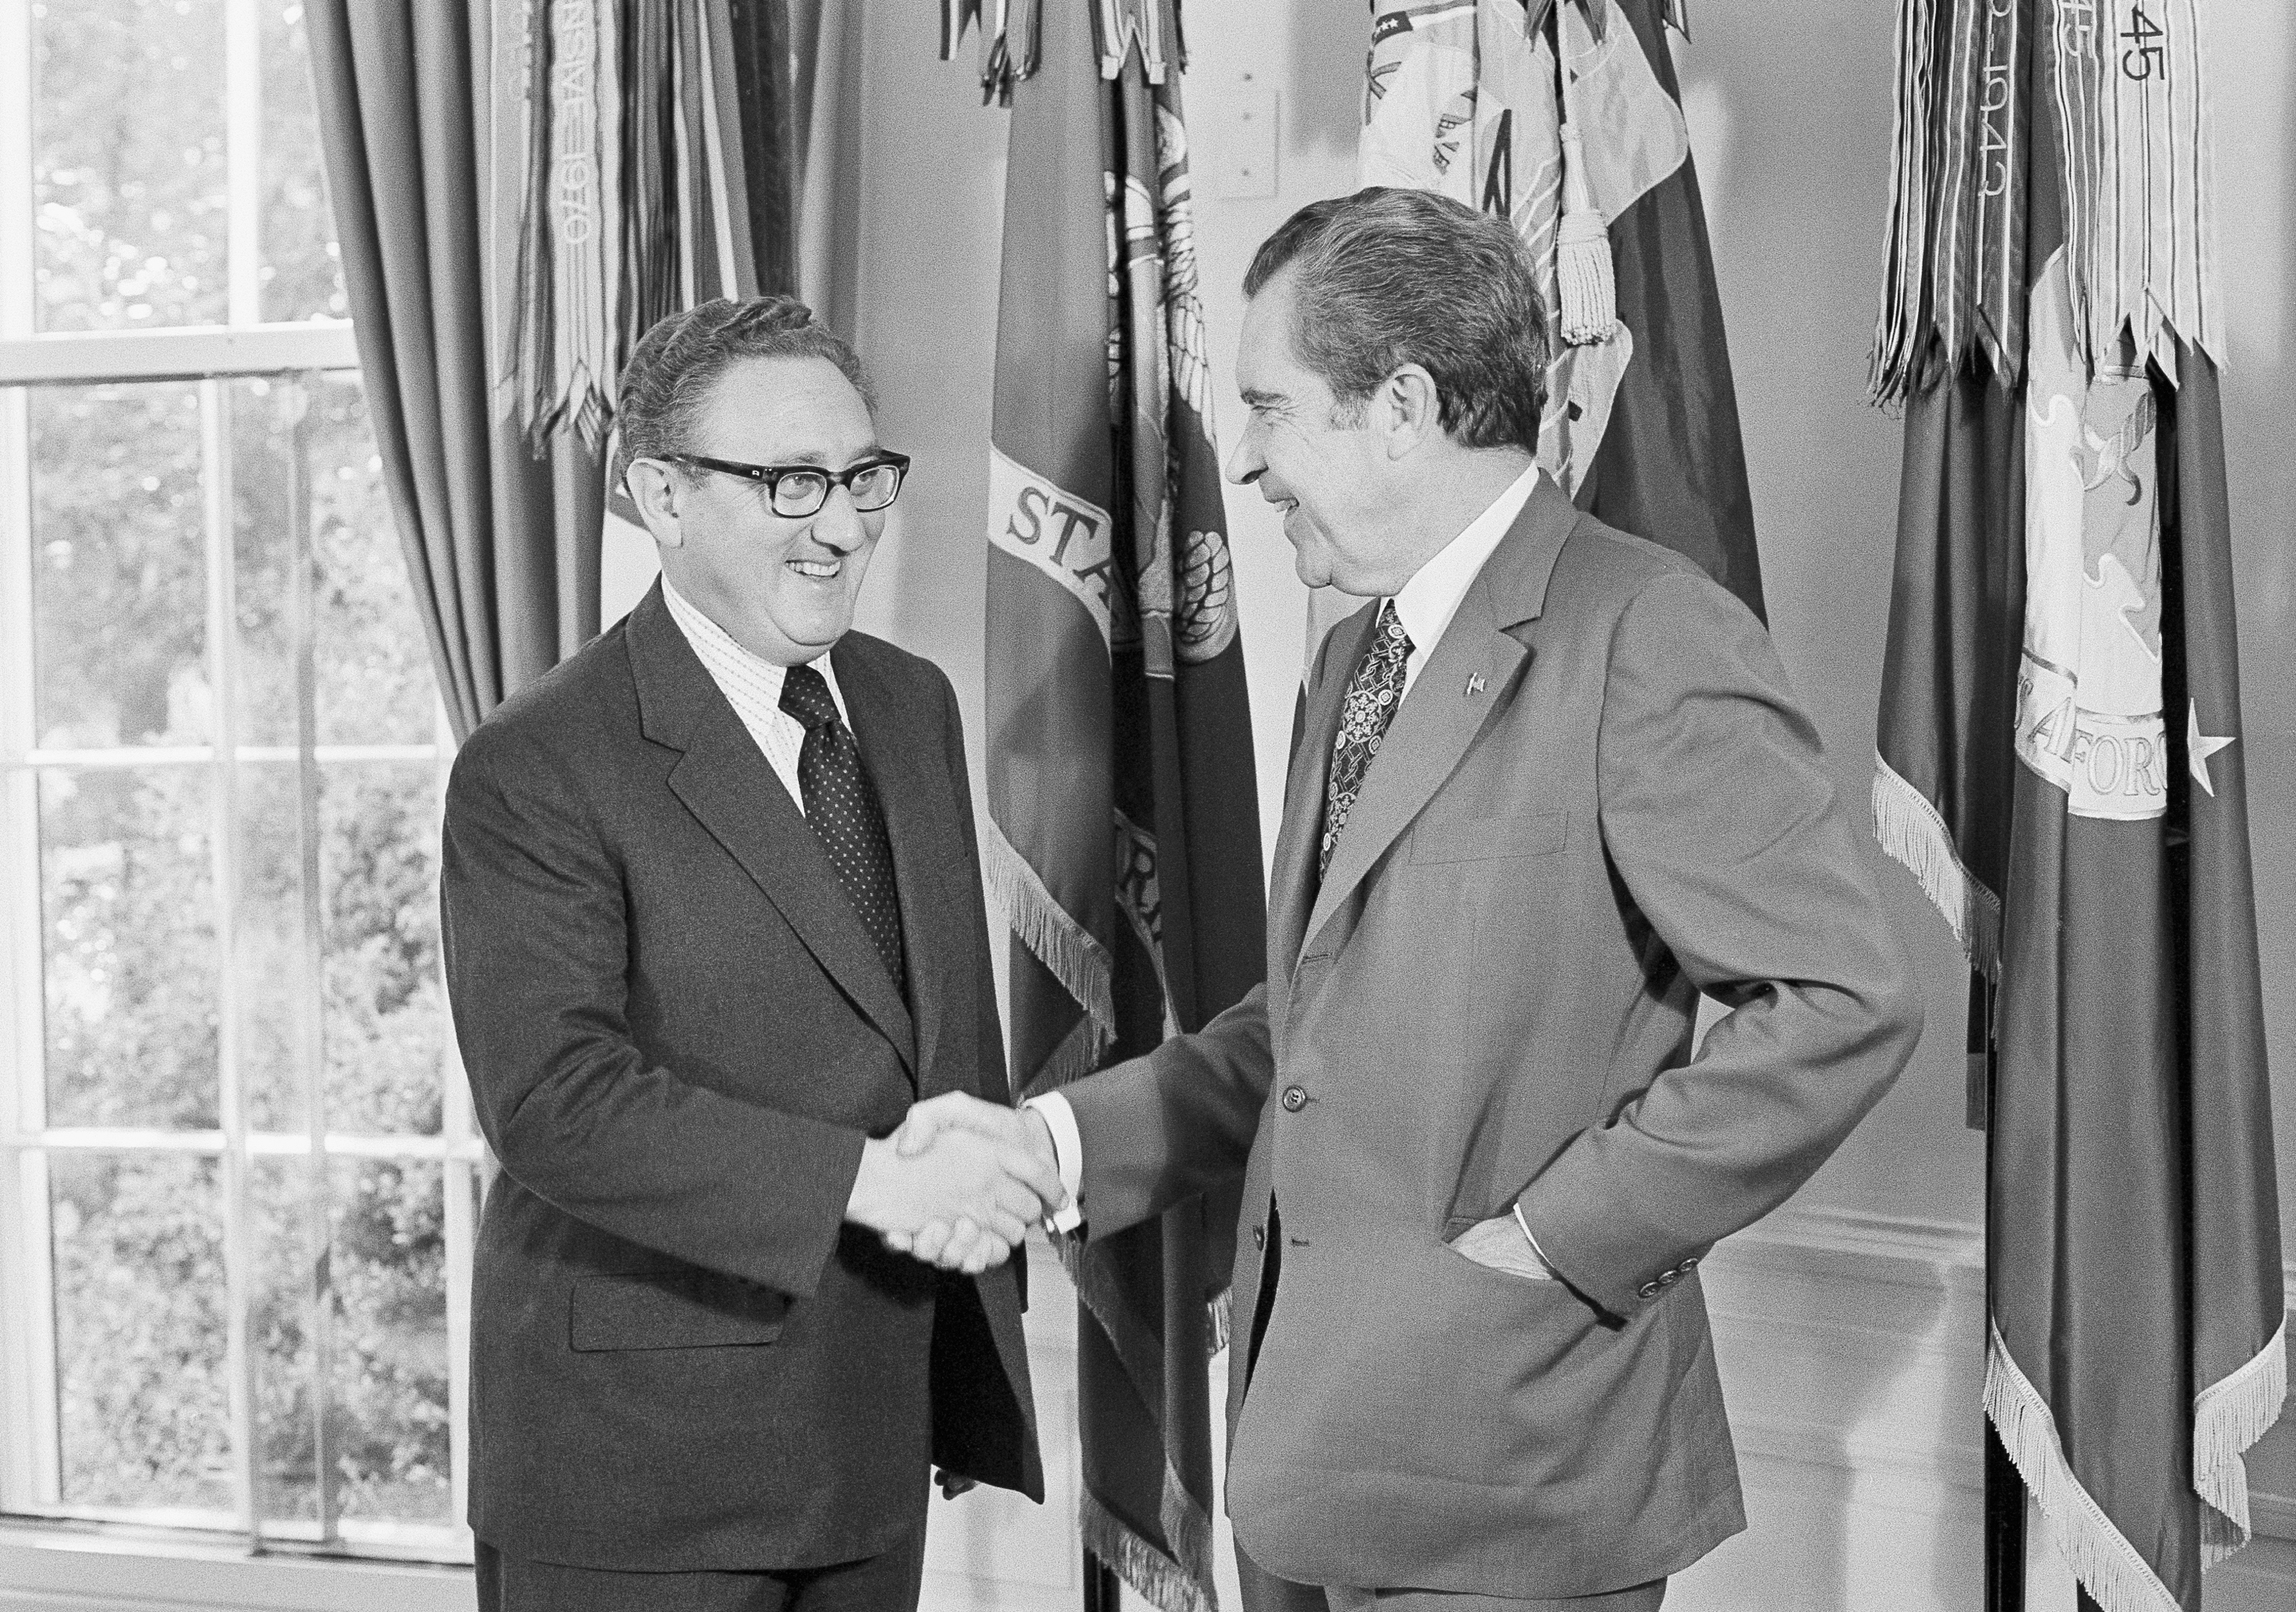 Richard Nixon felicita Kissinger después de que el secretario ganara el Premio Nobel de la Paz en 1973, en el Despacho Oval de la Casa Blanca en Washington, el 16 de octubre de 1973